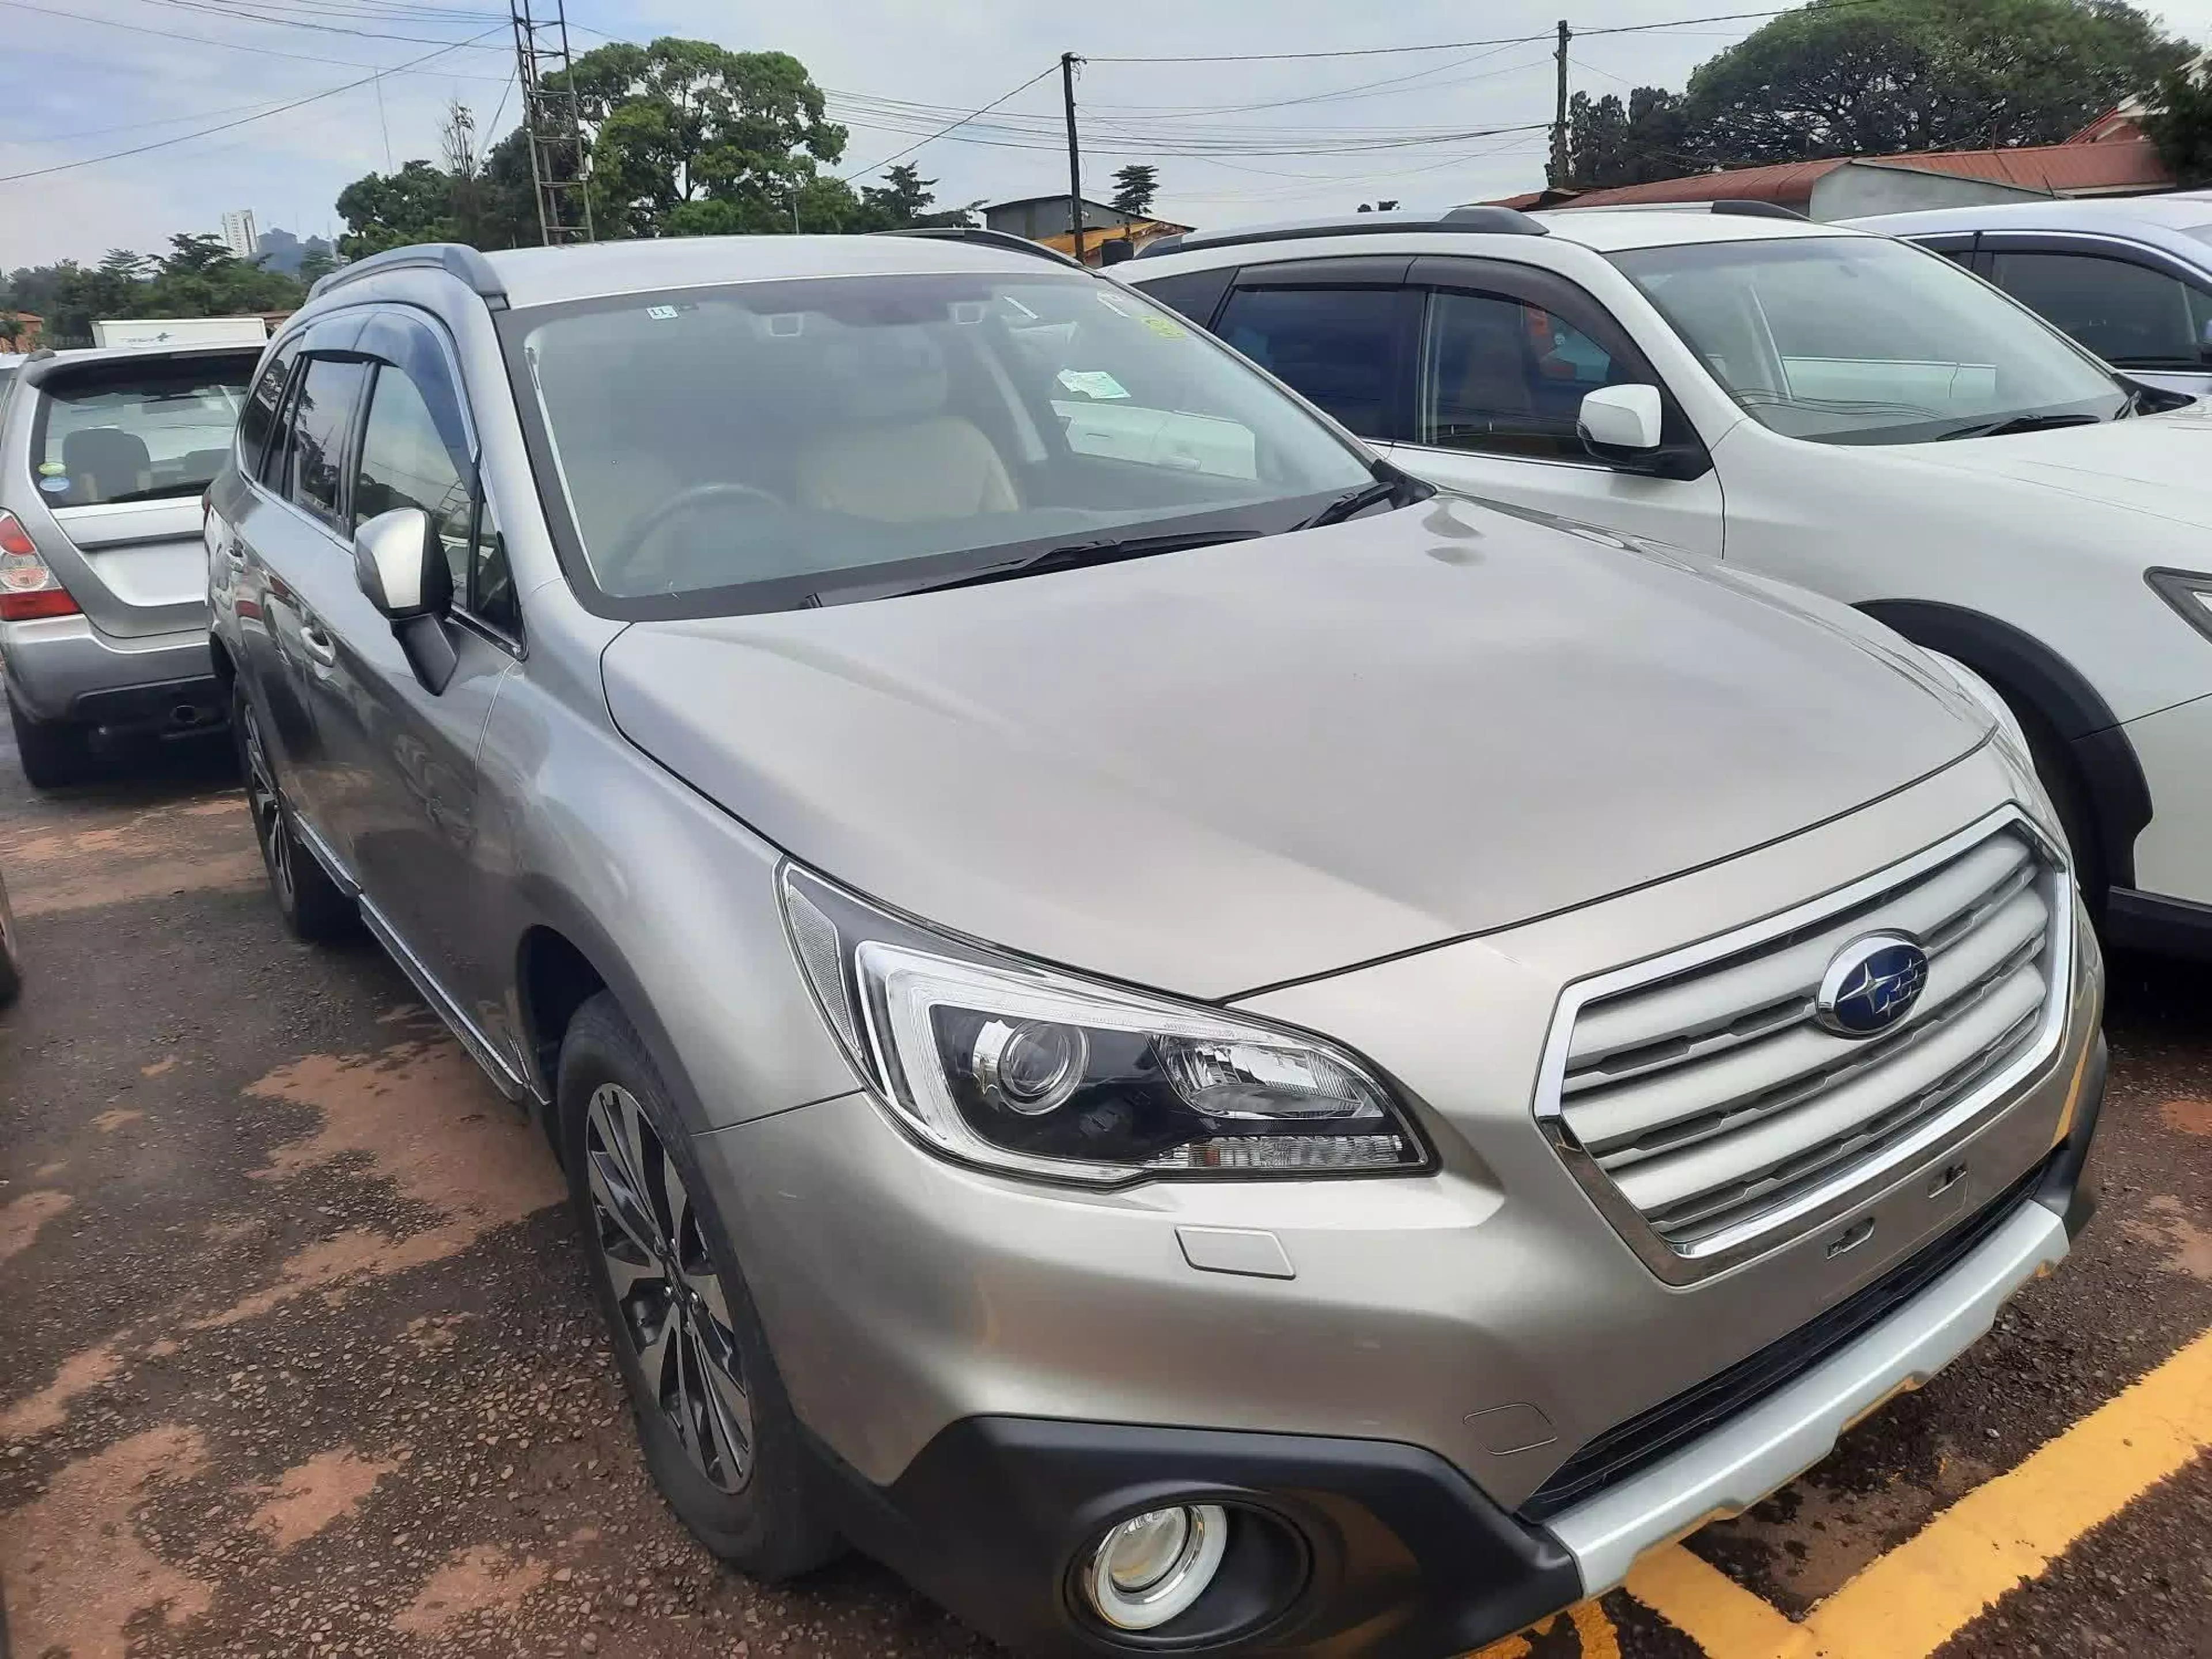 Subaru Outback - 2015